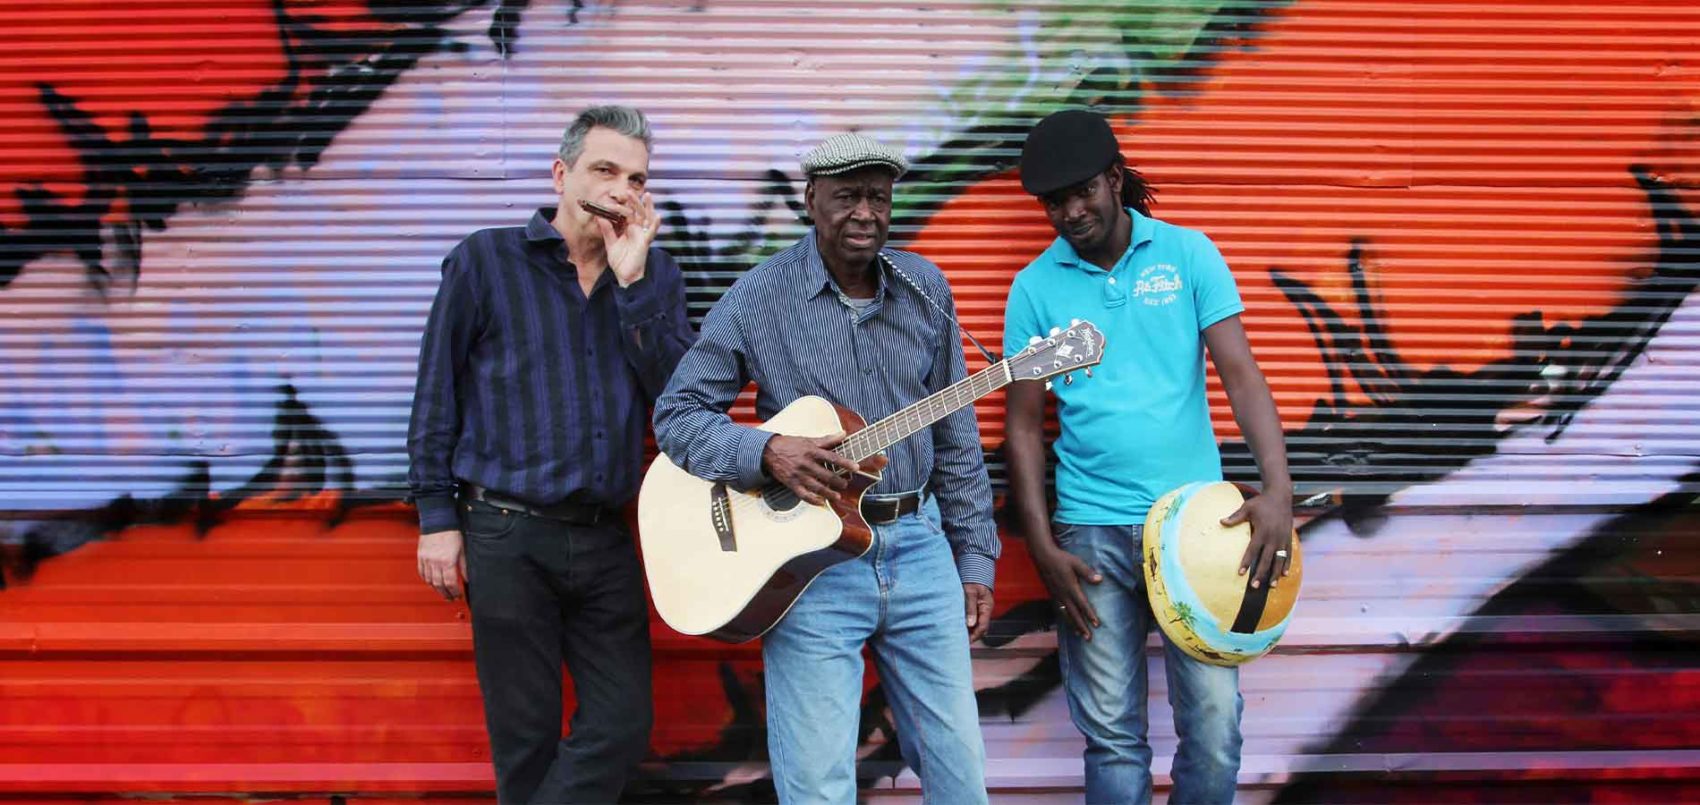 Boubacar Traoré est entouré de deux hommes, ils tiennent tous un instrument dans leurs mains